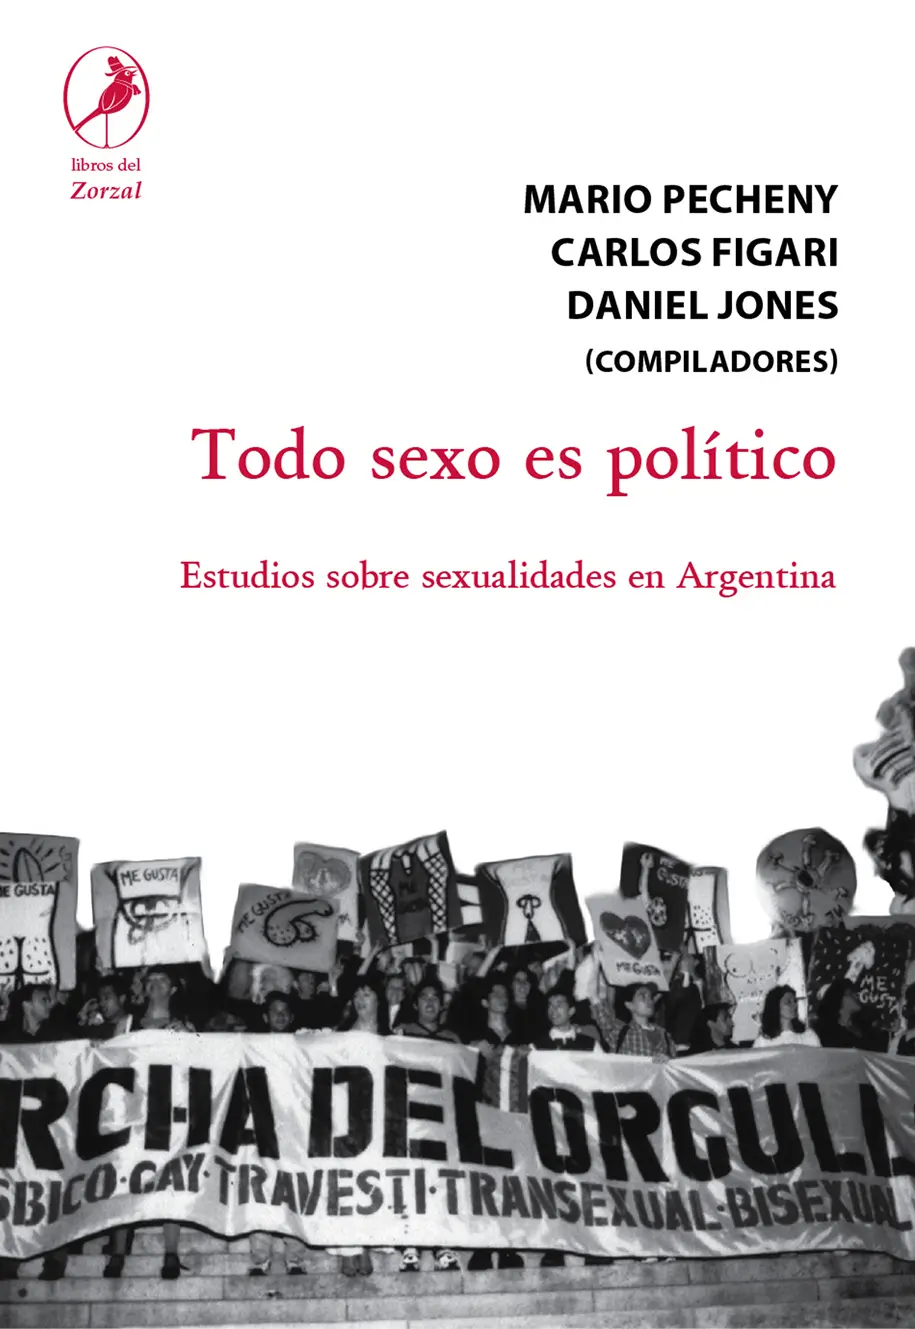 Mario Pecheny Carlos Figari Daniel Jones compiladores Todo sexo es político - фото 1